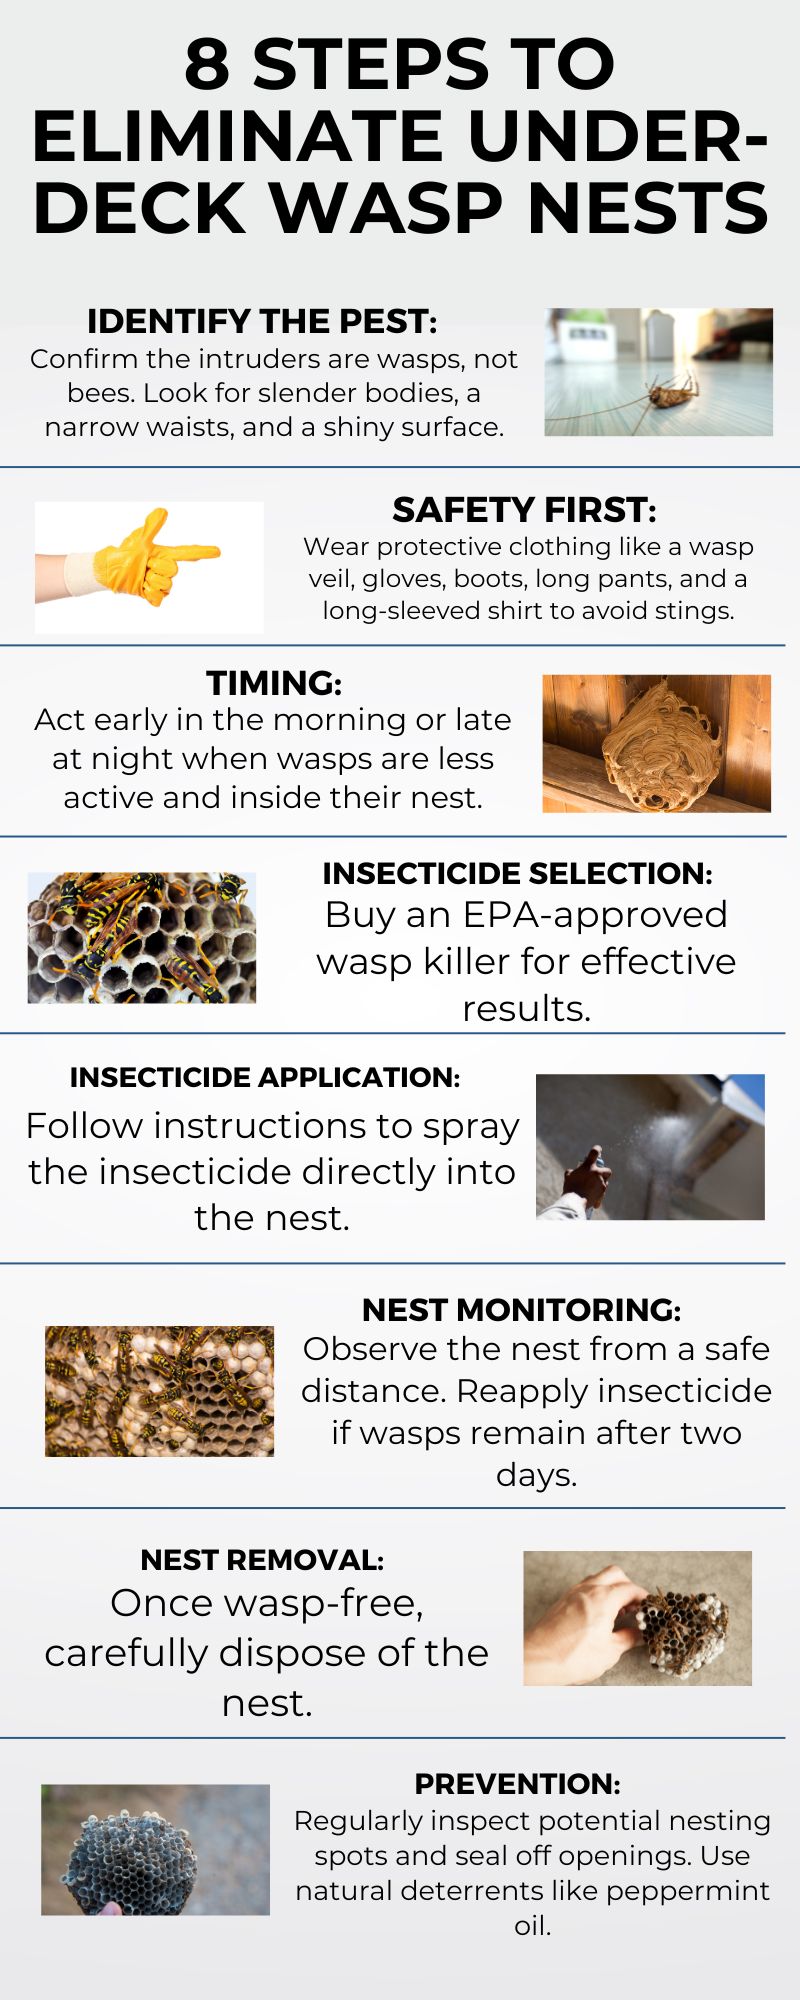 8 Steps to Eliminate Under-Deck Wasp Nests